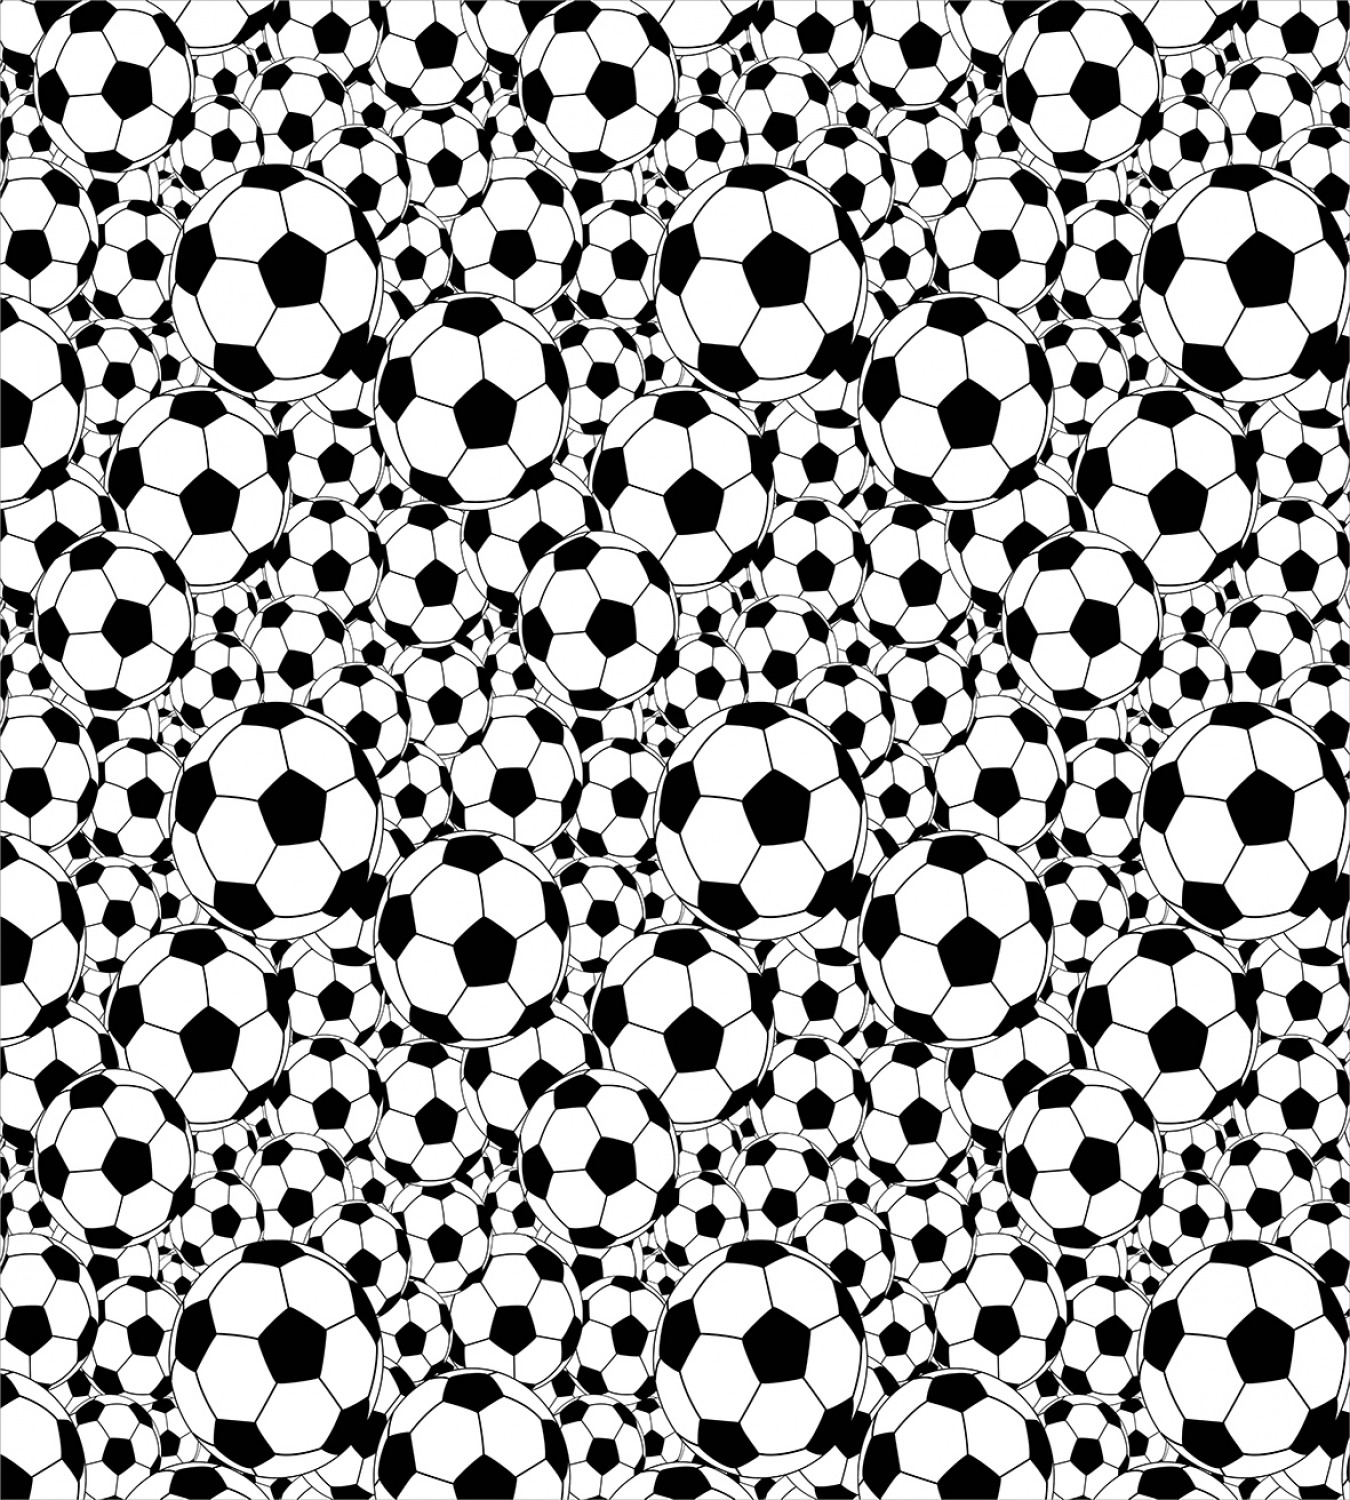 Black White Duvet Cover Set with Pillow Shams Soccer Ball in Net Print 